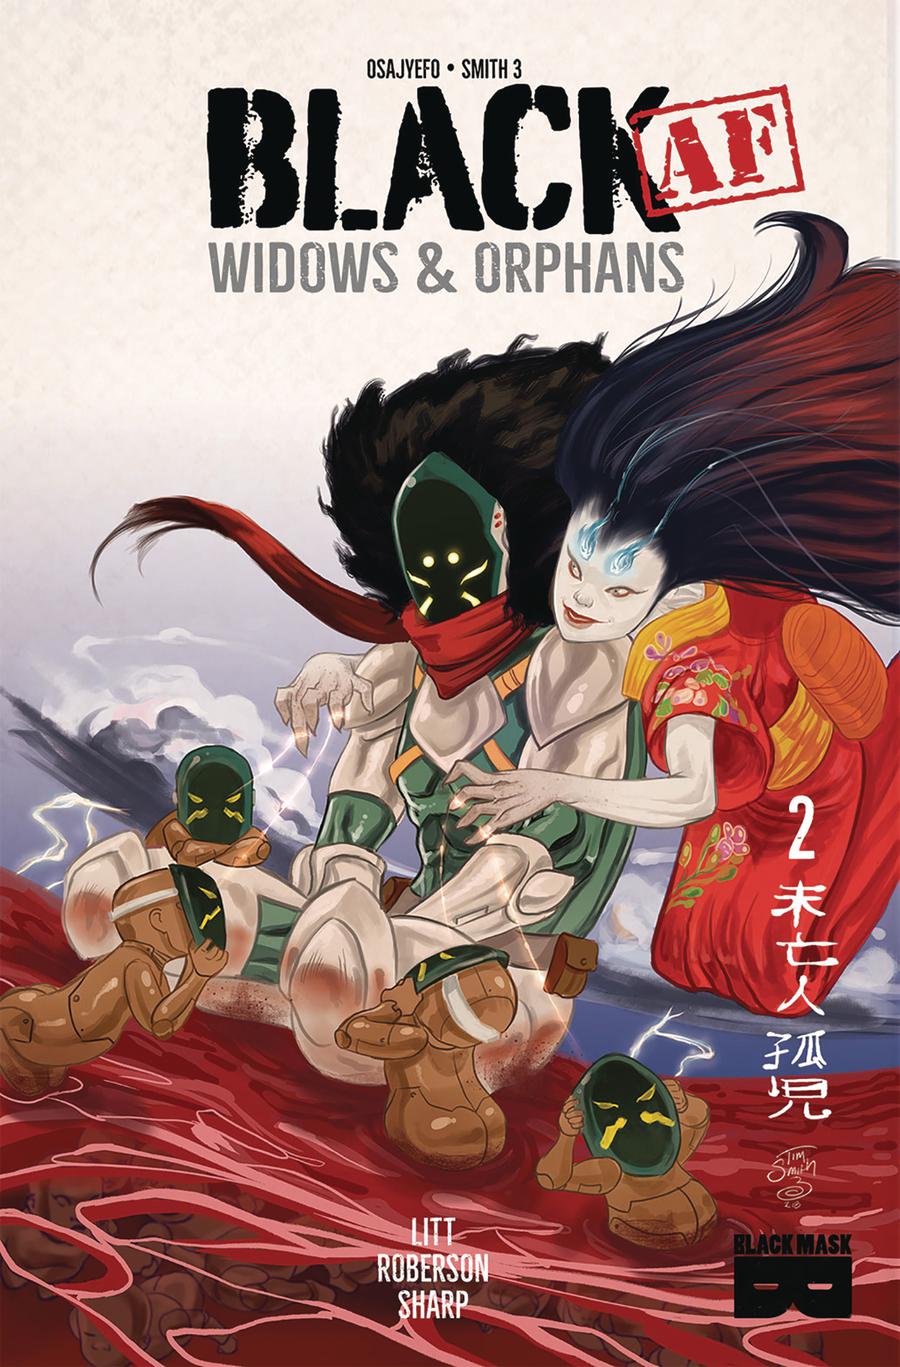 Black [AF] Widows & Orphans #2